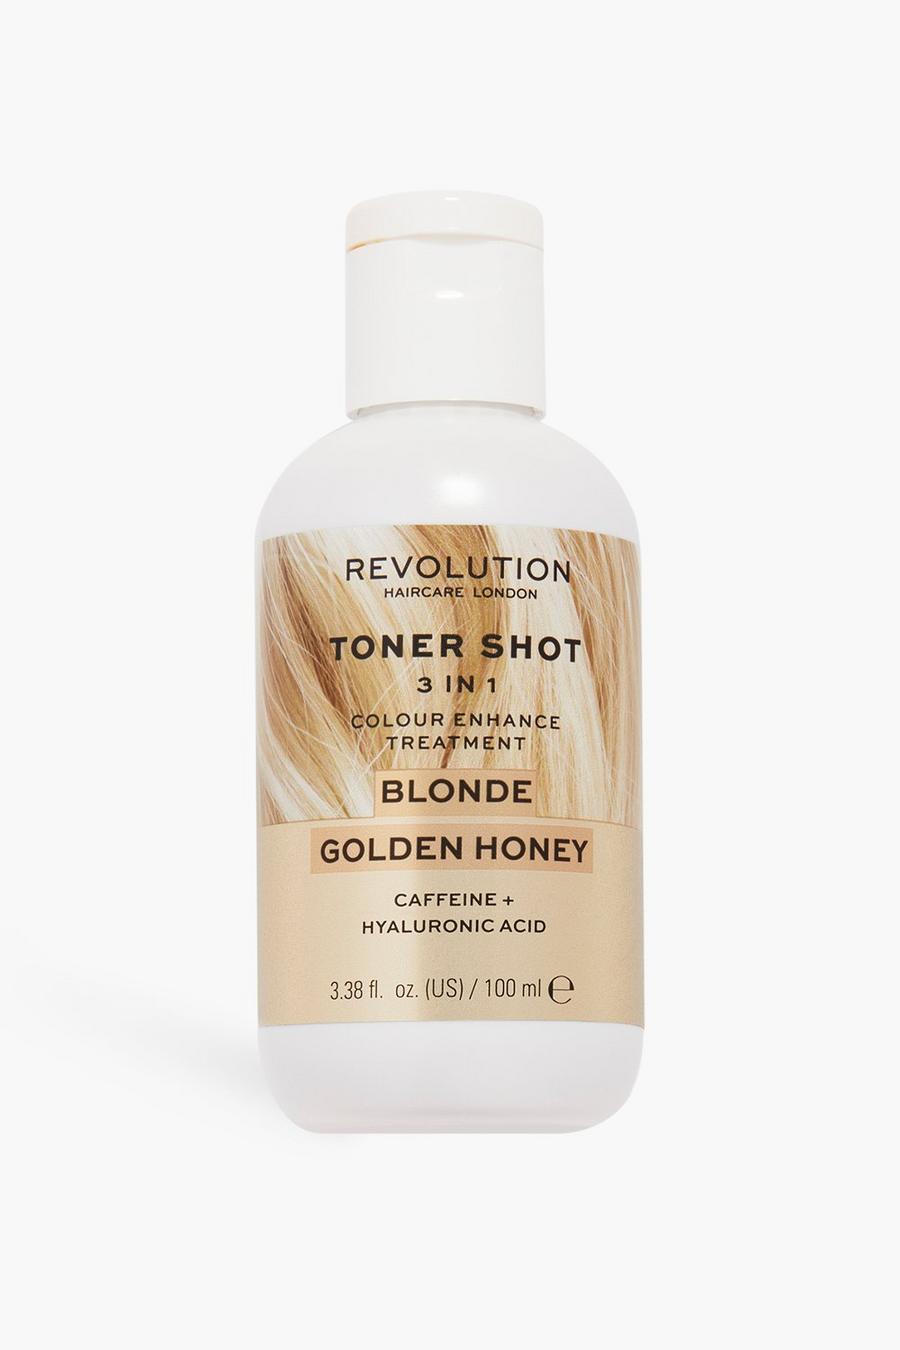 Revolution Hair Toner Shot Blonde Gold Honey